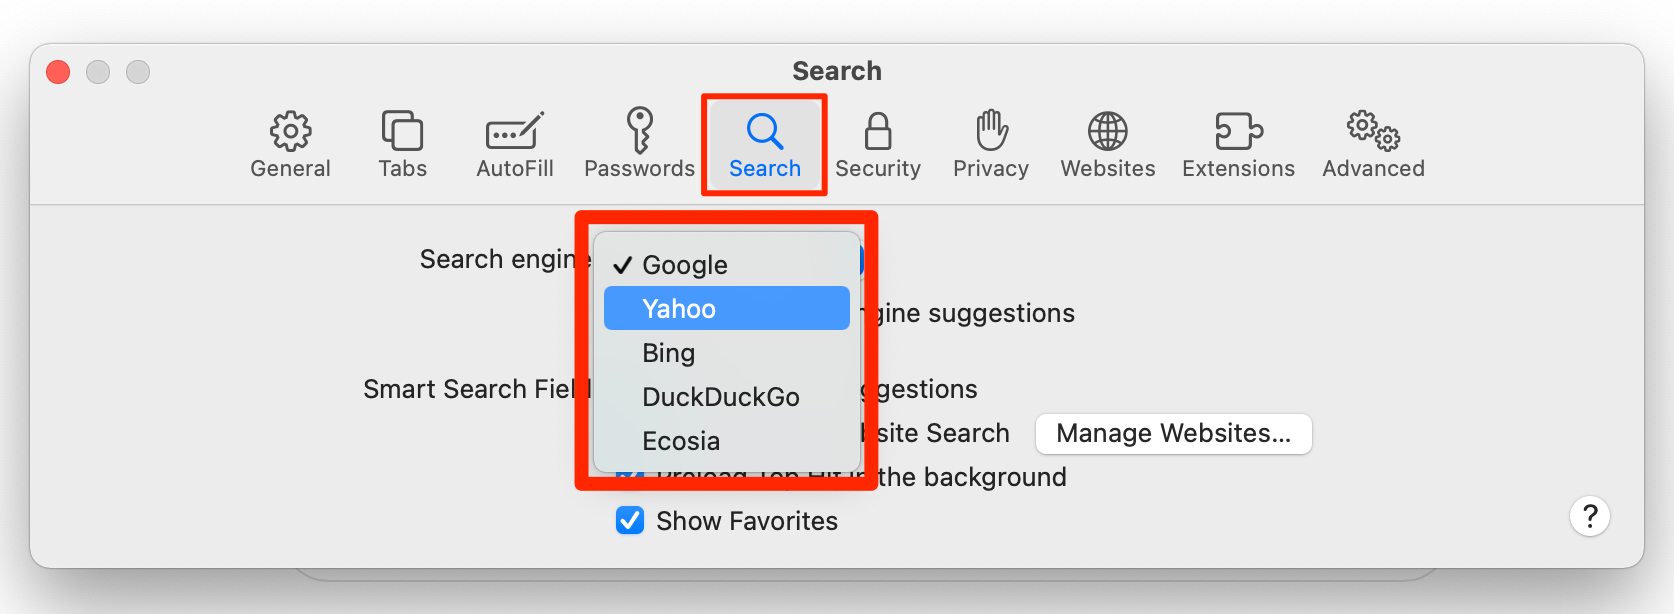 Safari's Search settings menu.